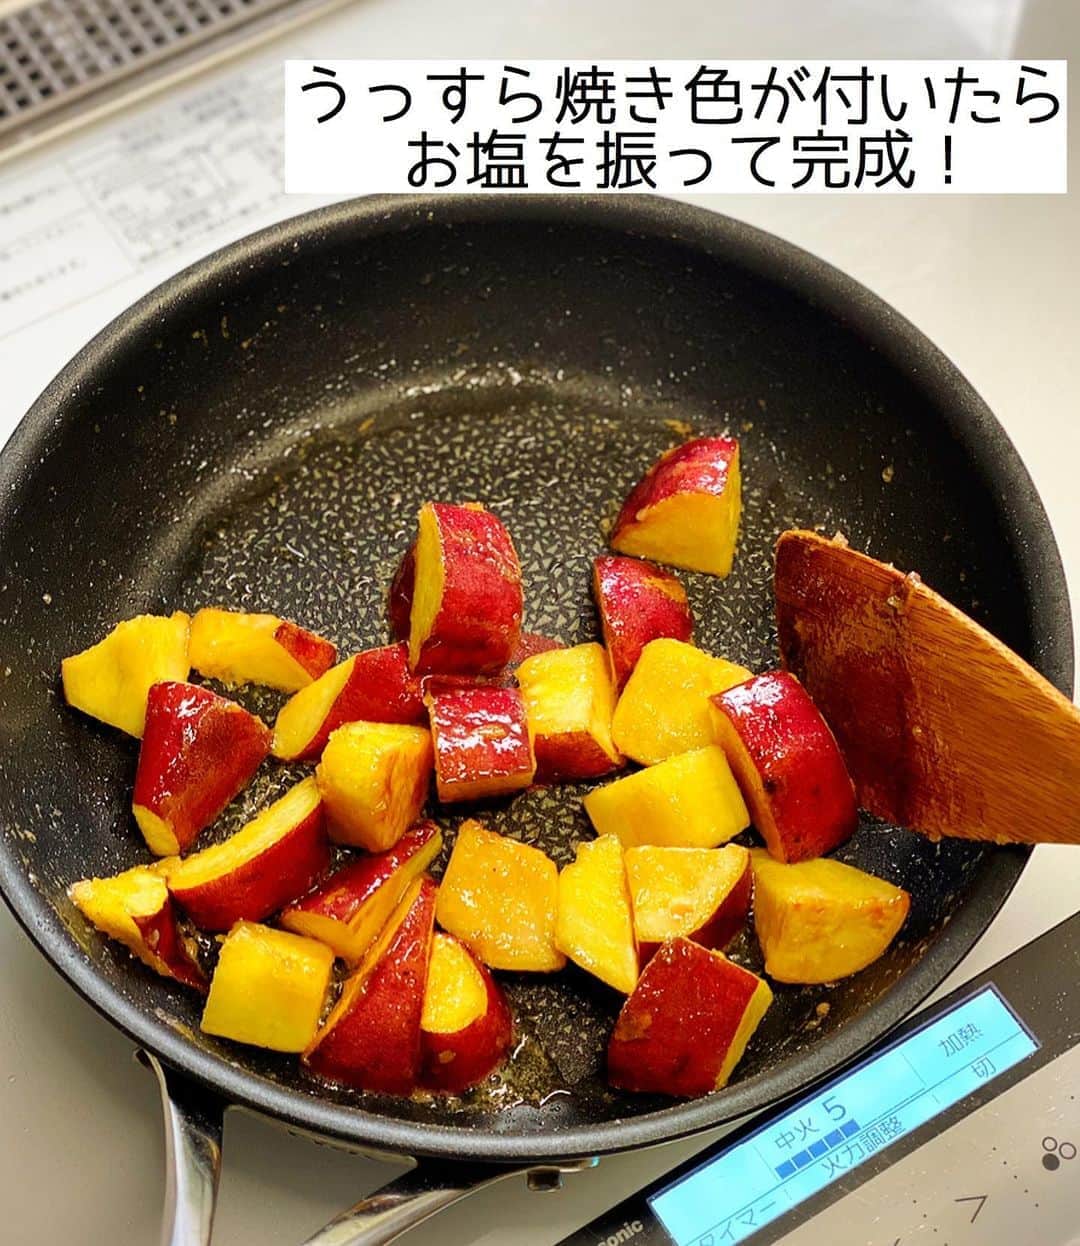 Mizuki【料理ブロガー・簡単レシピ】さんのインスタグラム写真 - (Mizuki【料理ブロガー・簡単レシピ】Instagram)「・﻿ 【レシピ】ーーーーーー﻿ ♡塩カラメルポテト♡﻿ ーーーーーーーーーーー﻿ ﻿ ﻿ ﻿ おはようございます(*^^*)﻿ ﻿ 今日はさつまいものおやつ♡﻿ 塩カラメルポテトのご紹介です♩﻿ お砂糖がからんだ表面はカリッと！﻿ 中はホクホクで止まらない美味しさですよ〜♡﻿ (ひとりで一本食べられる 笑)﻿ ﻿ ポイントは仕上げのお塩！﻿ 甘じょっぱい魅惑の味に﻿ 是非ともハマって下さいね😂﻿ 大学芋より簡単にできますよ〜♩﻿ ﻿ ﻿ ﻿ ーーーーーーーーーーーーーーーーーーーー﻿ 【2〜3人分】﻿ さつまいも...1本(250g)﻿ バター...15g﻿ 砂糖...大2﻿ 塩...少々﻿ ﻿ 1.さつまいもは皮ごと3cm大に切り、水に3分晒して水気を切る。耐熱ボウルに入れてふんわりラップし、600Wのレンジで4分加熱する。﻿ 2.フライパンにバターを中火で熱して1を炒める。バターがからんだら砂糖を加え、さつまいもに薄っすら焼き色が付くまで更に炒める。﻿ 3.仕上げに塩を振る。﻿ ーーーーーーーーーーーーーーーーーーーー﻿ ﻿ ﻿ ﻿ 《ポイント》﻿ ♦︎さつまいもは柔らか過ぎないくらいにレンチンしておきます♩(柔らか過ぎると炒めた時崩れやすい)﻿ ﻿ ﻿ ﻿ ﻿ ﻿ ﻿ ﻿ ﻿ 🆕🆕🆕🆕🆕🆕🆕🆕🆕🆕﻿ おかげさまで［今どき和食］が﻿ 8刷重版となりました(涙)﻿ 本当にありがとうございます！！﻿ 皆さんのおかげです（ ; ; ）💕﻿ 🆕🆕🆕🆕🆕🆕🆕🆕🆕🆕﻿ ↓ ↓ ↓﻿ ＿＿＿＿＿＿＿＿＿＿＿＿＿＿＿＿＿＿＿﻿ 📕8刷重版しました📕﻿ 簡単・時短！ 毎日のごはんがラクになる﻿ ✨🦋 【 #Mizukiの今どき和食 】🦋✨﻿ ＿＿＿＿＿＿＿＿＿＿＿＿＿＿＿＿＿＿＿﻿ なるべく少ない材料で﻿ 手間も時間も省きながら﻿ 簡単にできるおいしい和食レシピ♩﻿ 簡単に失敗なくマスターできる一冊で﻿ もっと気軽に、カジュアルに﻿ 和食を楽しんで下さいね(*^^*)﻿ ＿＿＿＿＿＿＿＿＿＿＿＿＿＿＿＿＿＿＿﻿ ﻿ ﻿ ﻿ ＿＿＿＿＿＿＿＿＿＿＿＿＿＿＿＿＿＿＿﻿ 🎀6刷重版しました🎀﻿ 混ぜて焼くだけ。はじめてでも失敗しない！﻿ 【#ホットケーキミックスのお菓子 】﻿ ﻿ 一冊まるっとホケミスイーツ♩﻿ 普段のおやつから﻿ 特別な日にも使えるレシピを﻿ この一冊に詰め込みました(*^^*)﻿ ホットケーキミックスを使えば﻿ 簡単に本格的なお菓子が作れますよ♡﻿ ＿＿＿＿＿＿＿＿＿＿＿＿＿＿＿＿＿﻿ ﻿ ﻿ ﻿ ﻿ ￣￣￣￣￣￣￣￣￣￣￣￣￣￣￣￣￣￣﻿ レシピを作って下さった際や﻿ レシピ本についてのご投稿には﻿ タグ付け( @mizuki_31cafe )して﻿ お知らせいただけると嬉しいです😊💕﻿ ＿＿＿＿＿＿＿＿＿＿＿＿＿＿＿＿＿＿﻿ ﻿ ﻿ ﻿ ﻿ ﻿ #さつまいも#おやつ#洋風#大学芋#スイーツ﻿ #Mizuki#簡単レシピ#時短レシピ#節約レシピ#料理#レシピ#フーディーテーブル#マカロニメイト#おうちごはん#デリスタグラマー#料理好きな人と繋がりたい#食べ物#料理記録#おうちごはんlover#写真好きな人と繋がりたい#foodpic#cooking#recipe#lin_stagrammer#foodporn#yummy#塩カラメルポテトm」9月4日 7時21分 - mizuki_31cafe